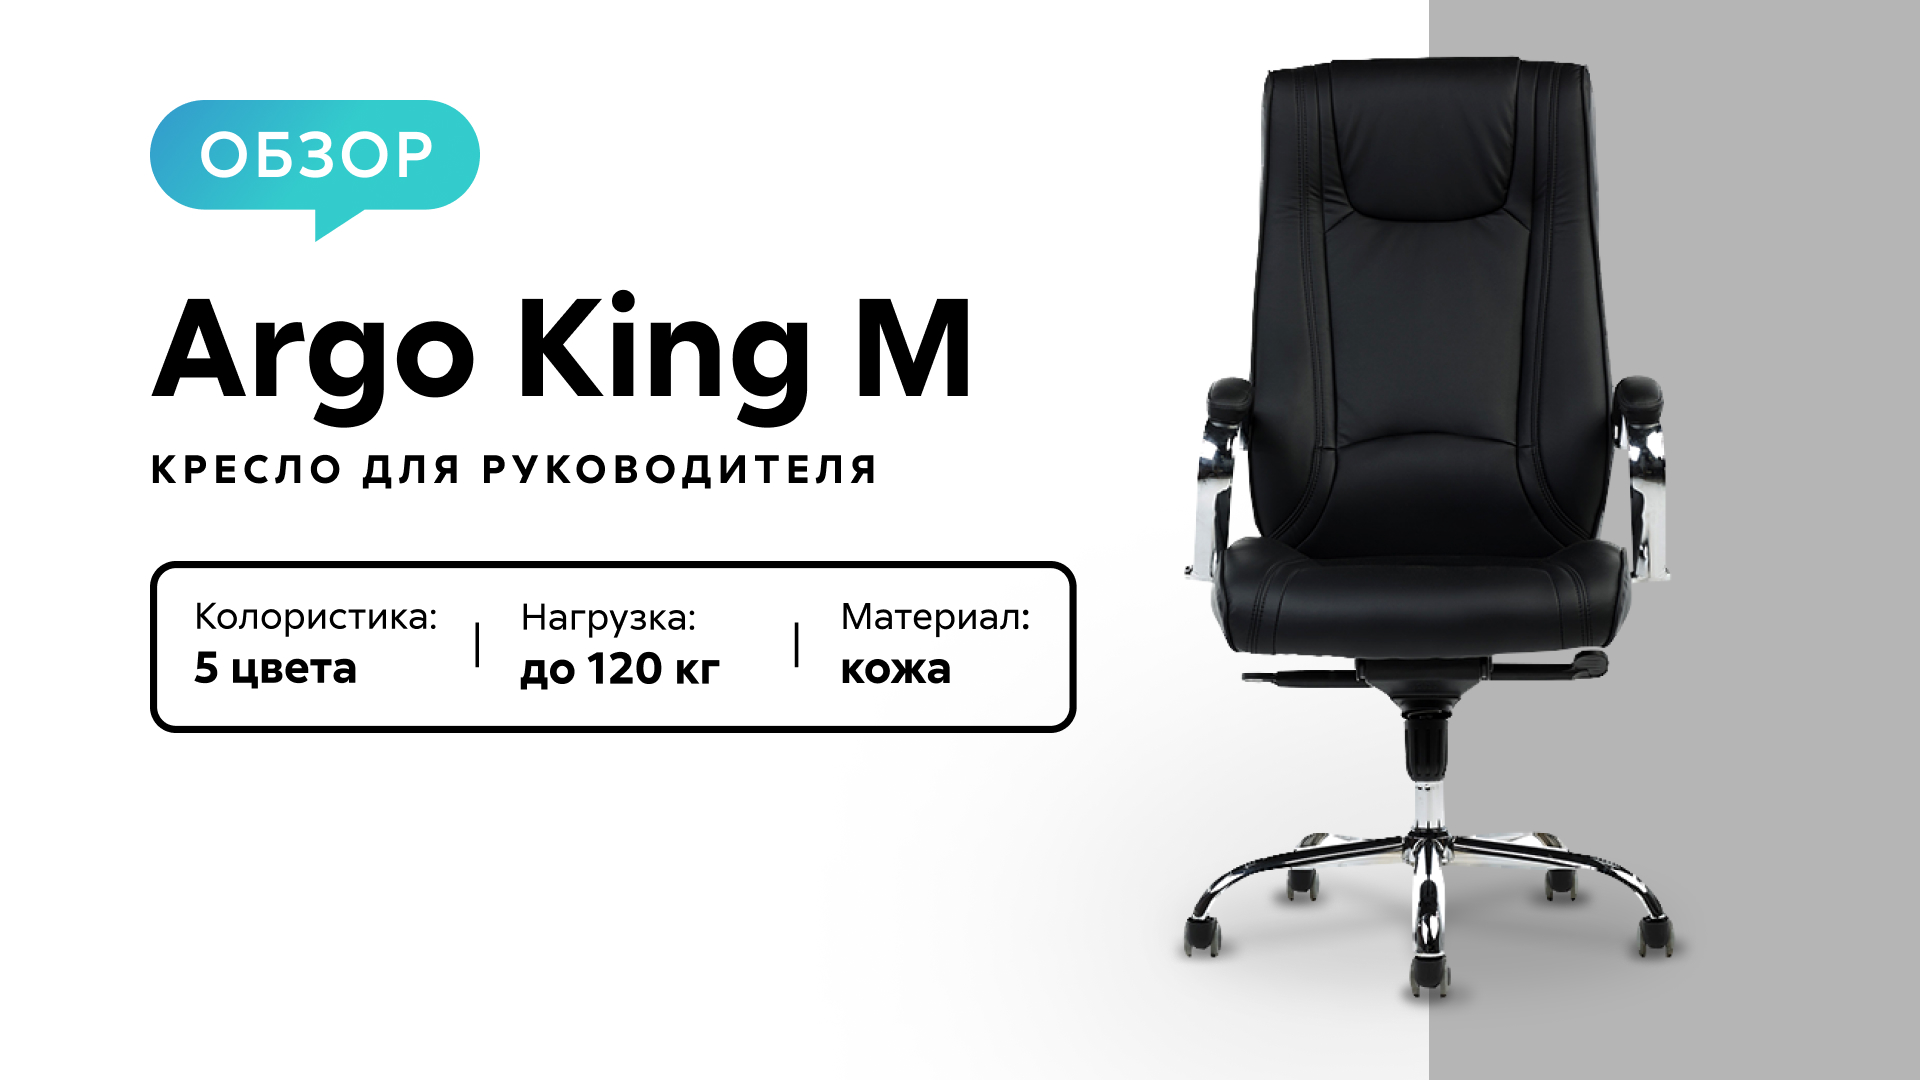 Обзор кресла для руководителя Argo King M